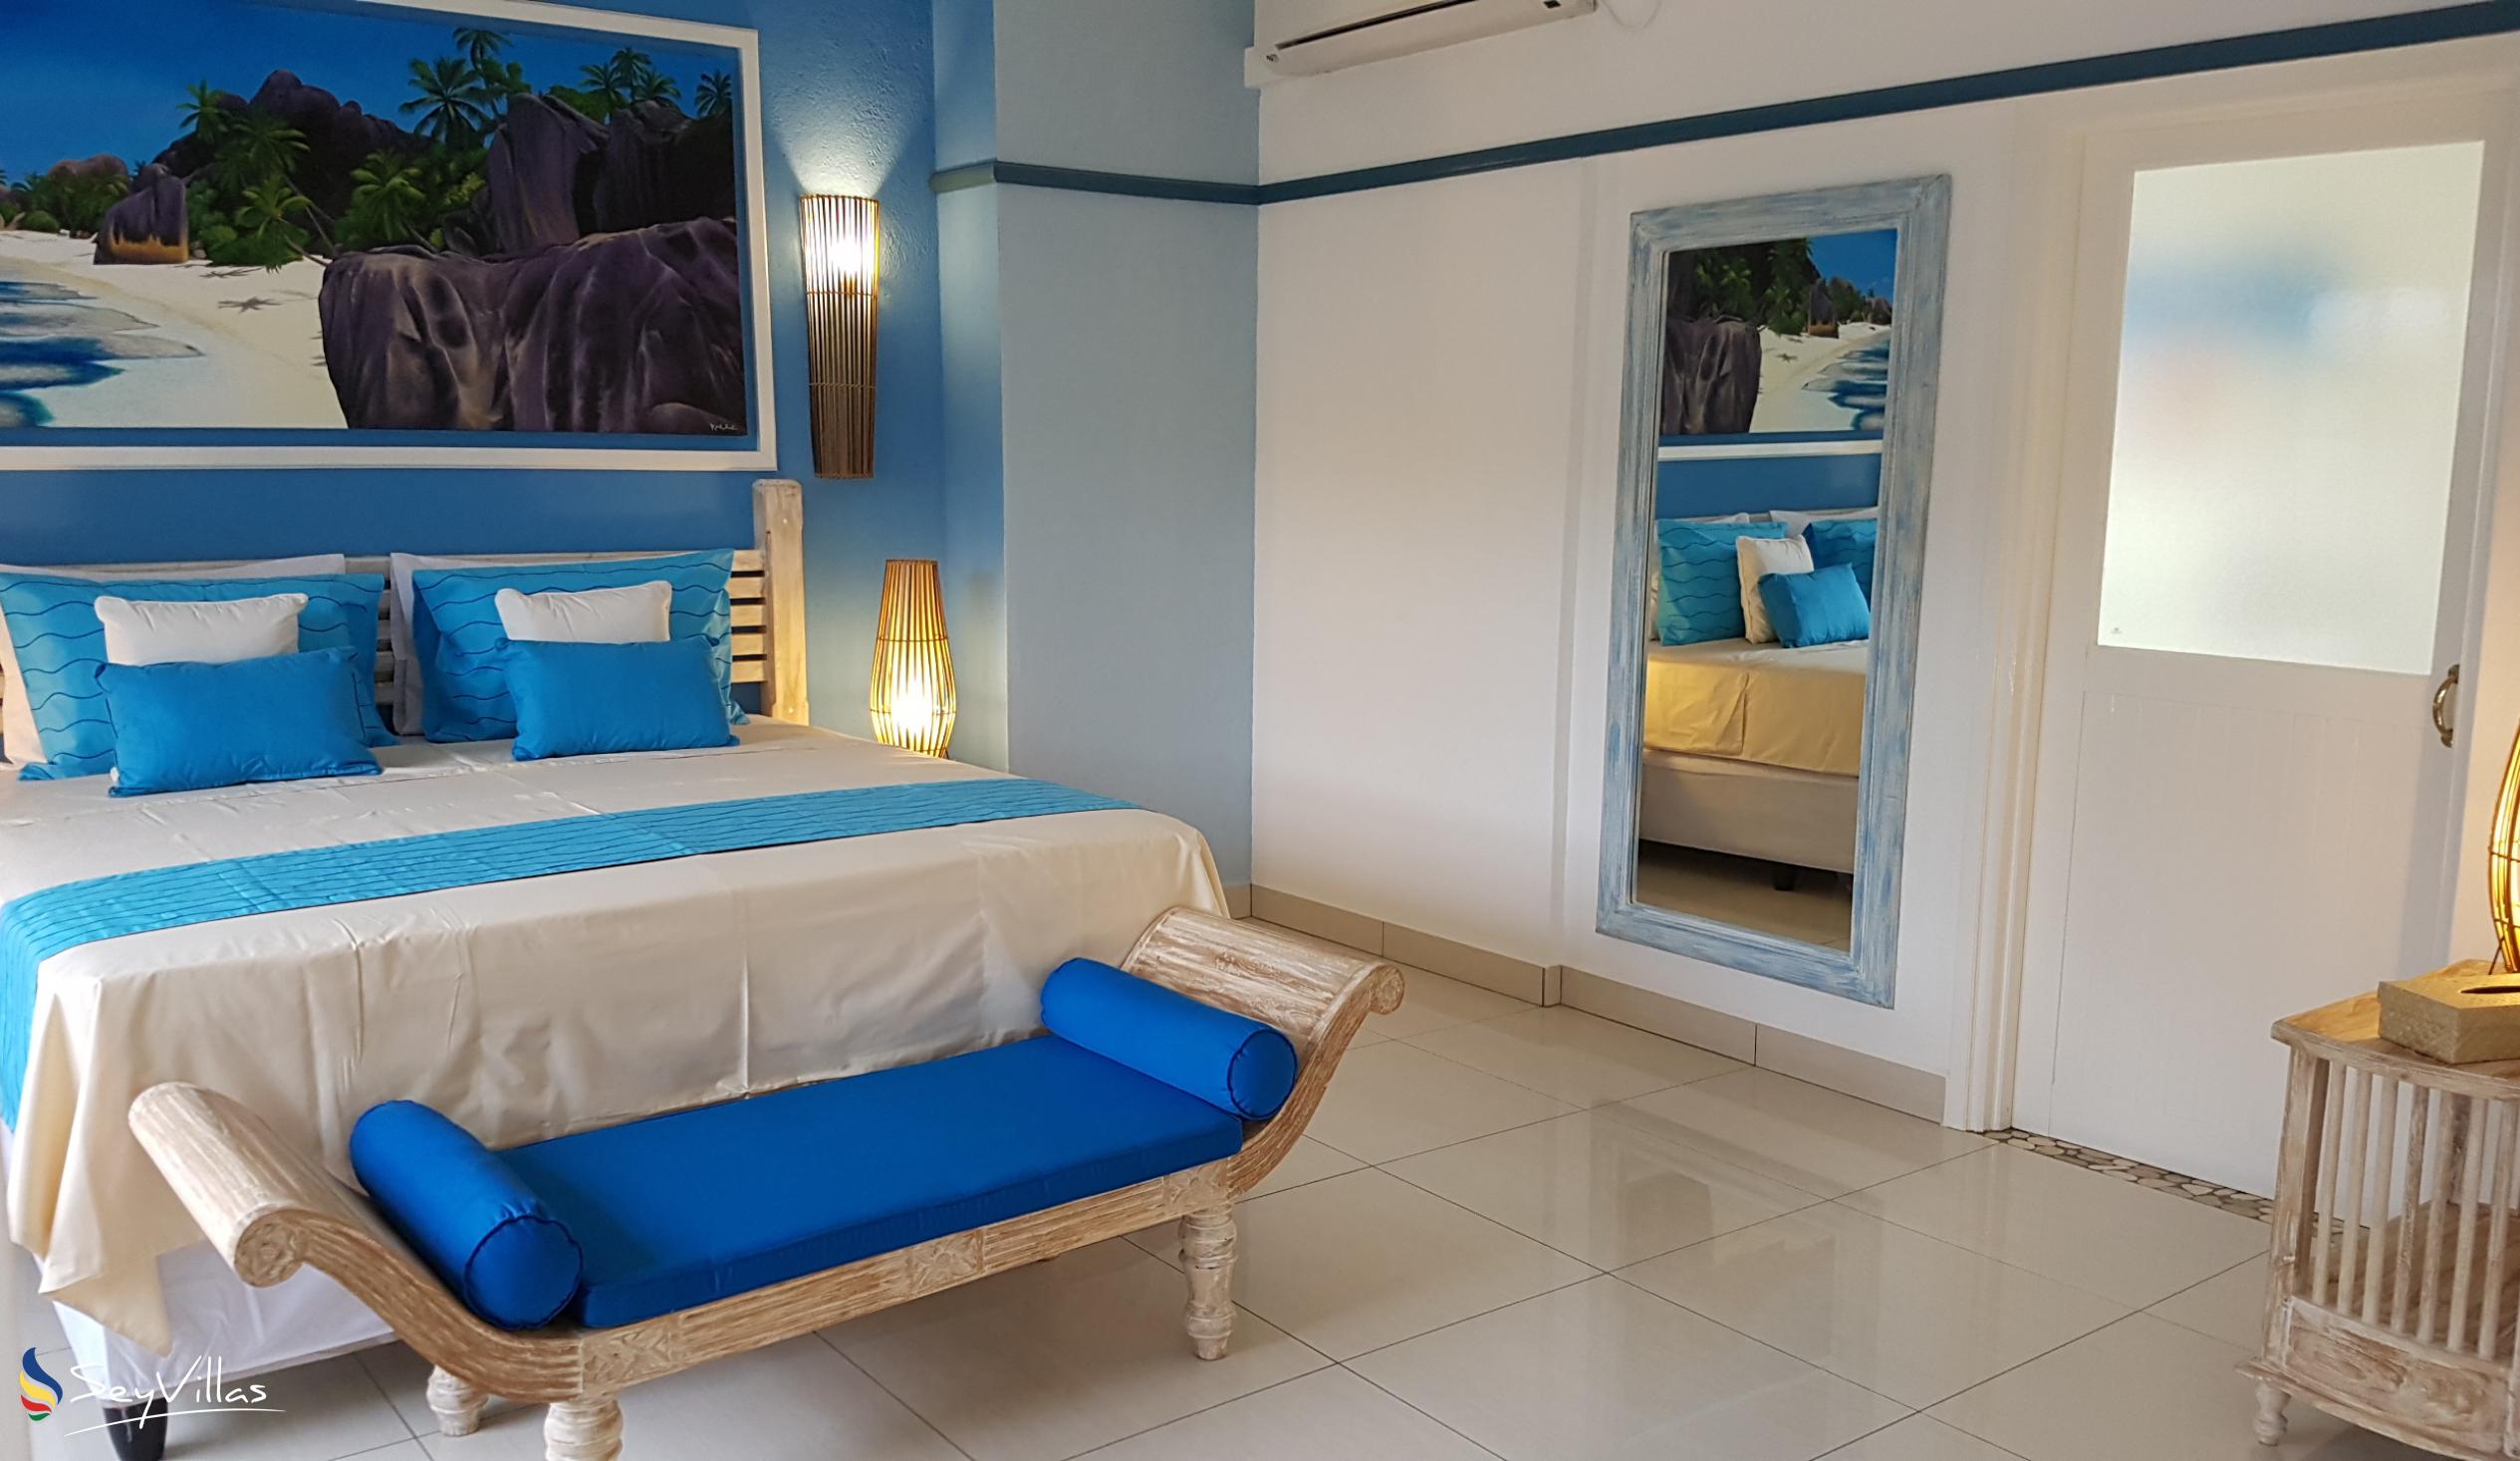 Foto 55: Villa Charme De L'ile - Appartement de luxe avec vue sur la piscine - La Digue (Seychelles)